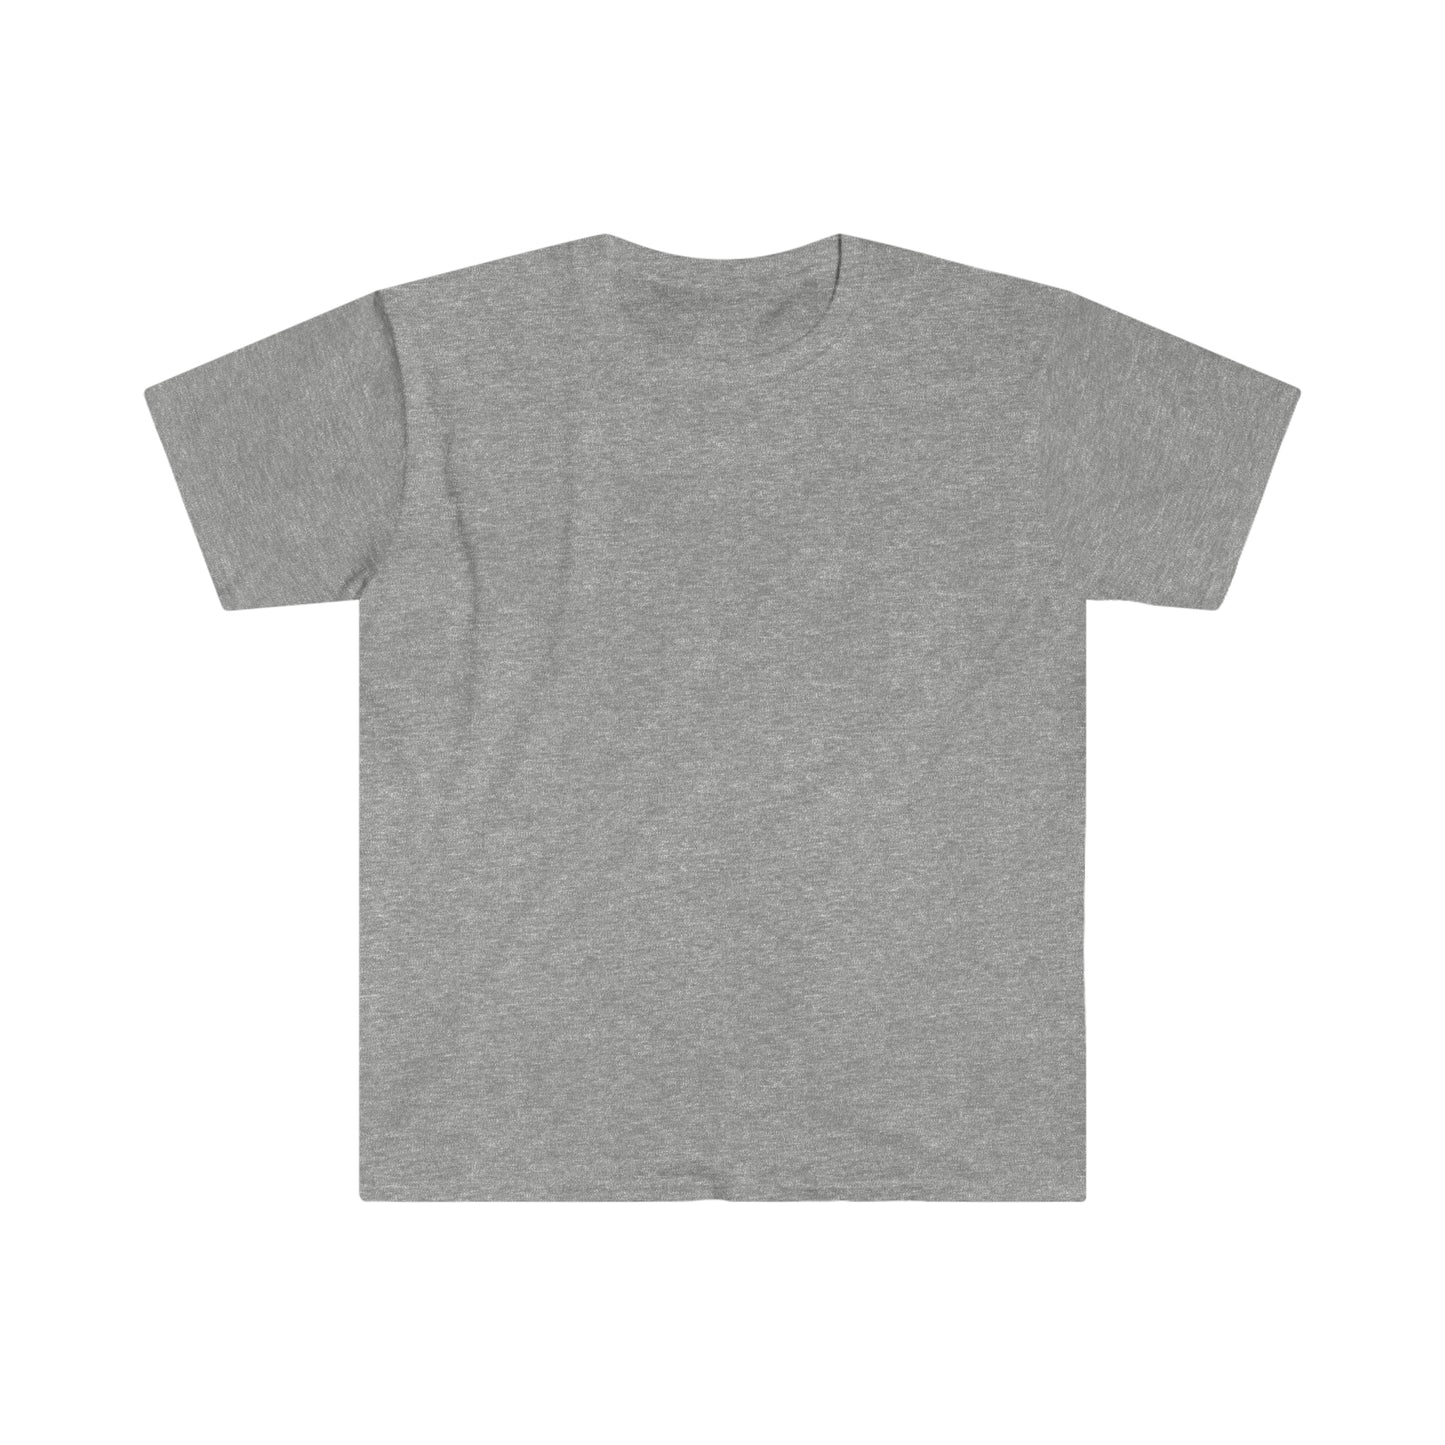 ACRWC Unisex Softstyle T-Shirt